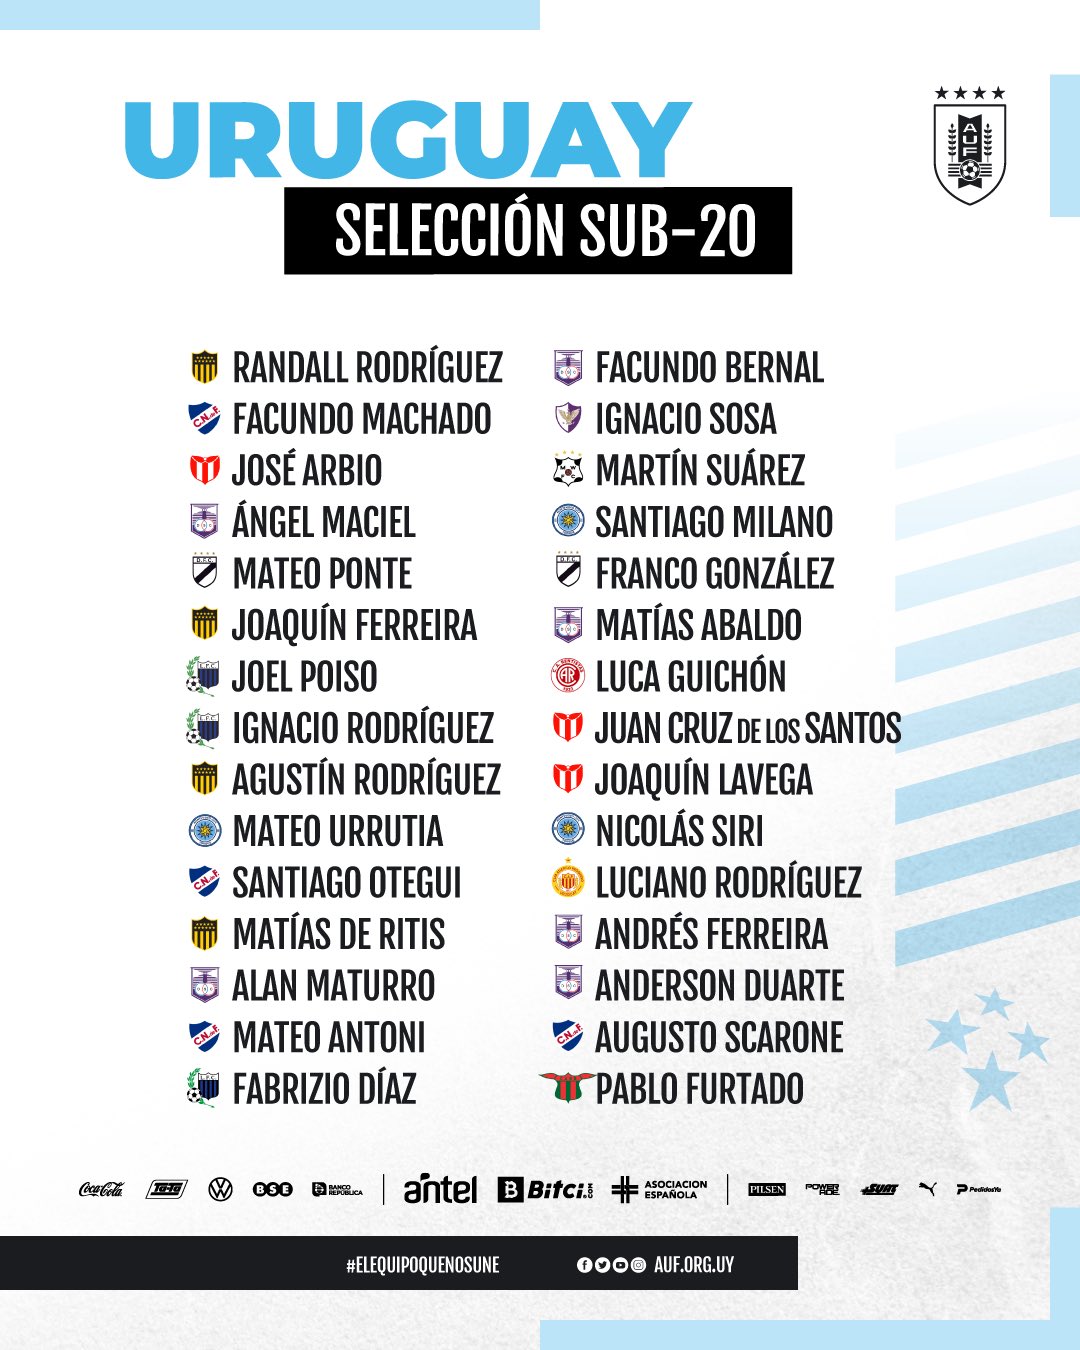 El plantel completo de Uruguay para el Mundial Sub 20 de 2023